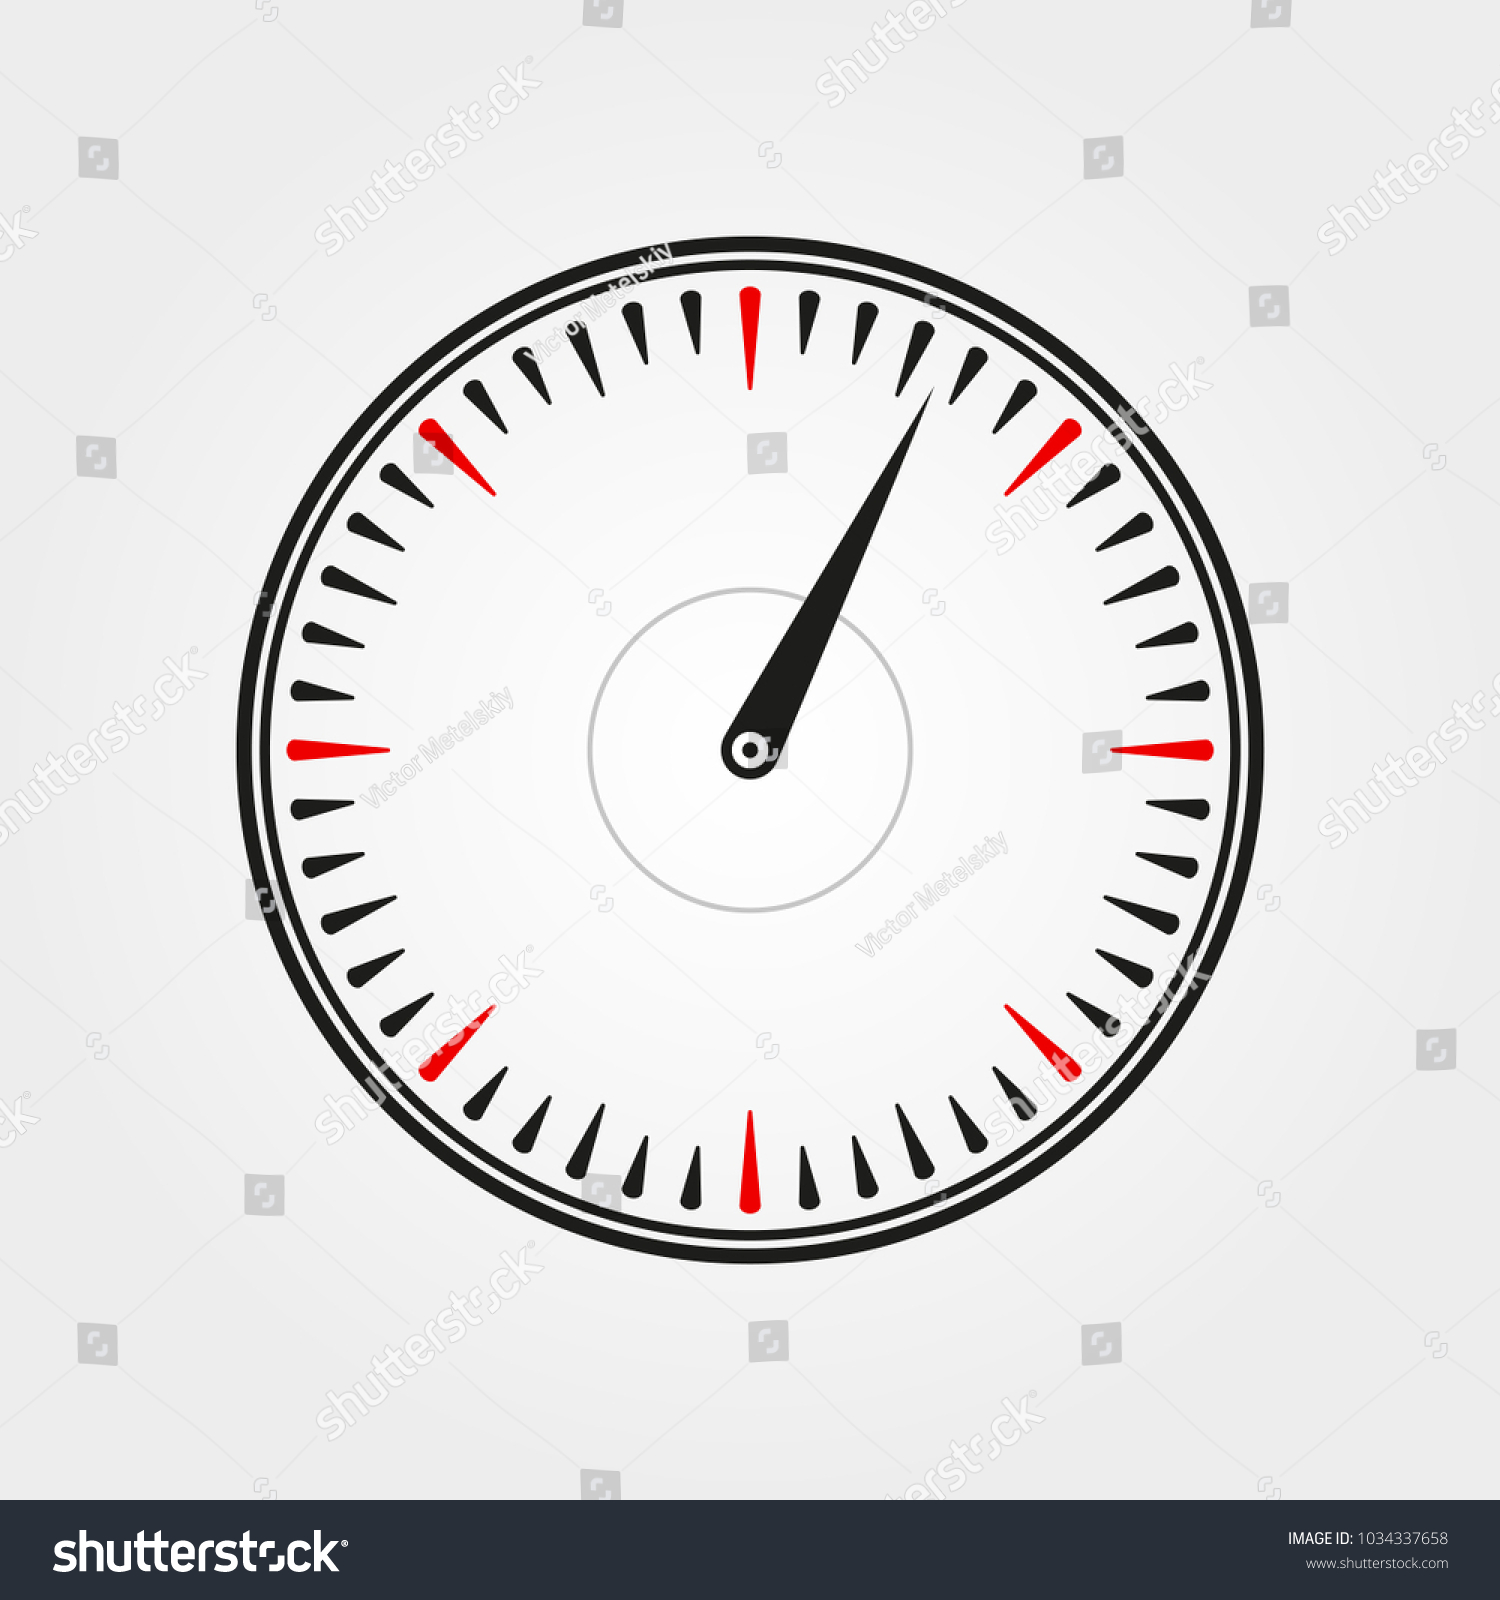 Speedometer Icon Meter Gauge Logo Dashboard Stock Vector 1034337658 ...